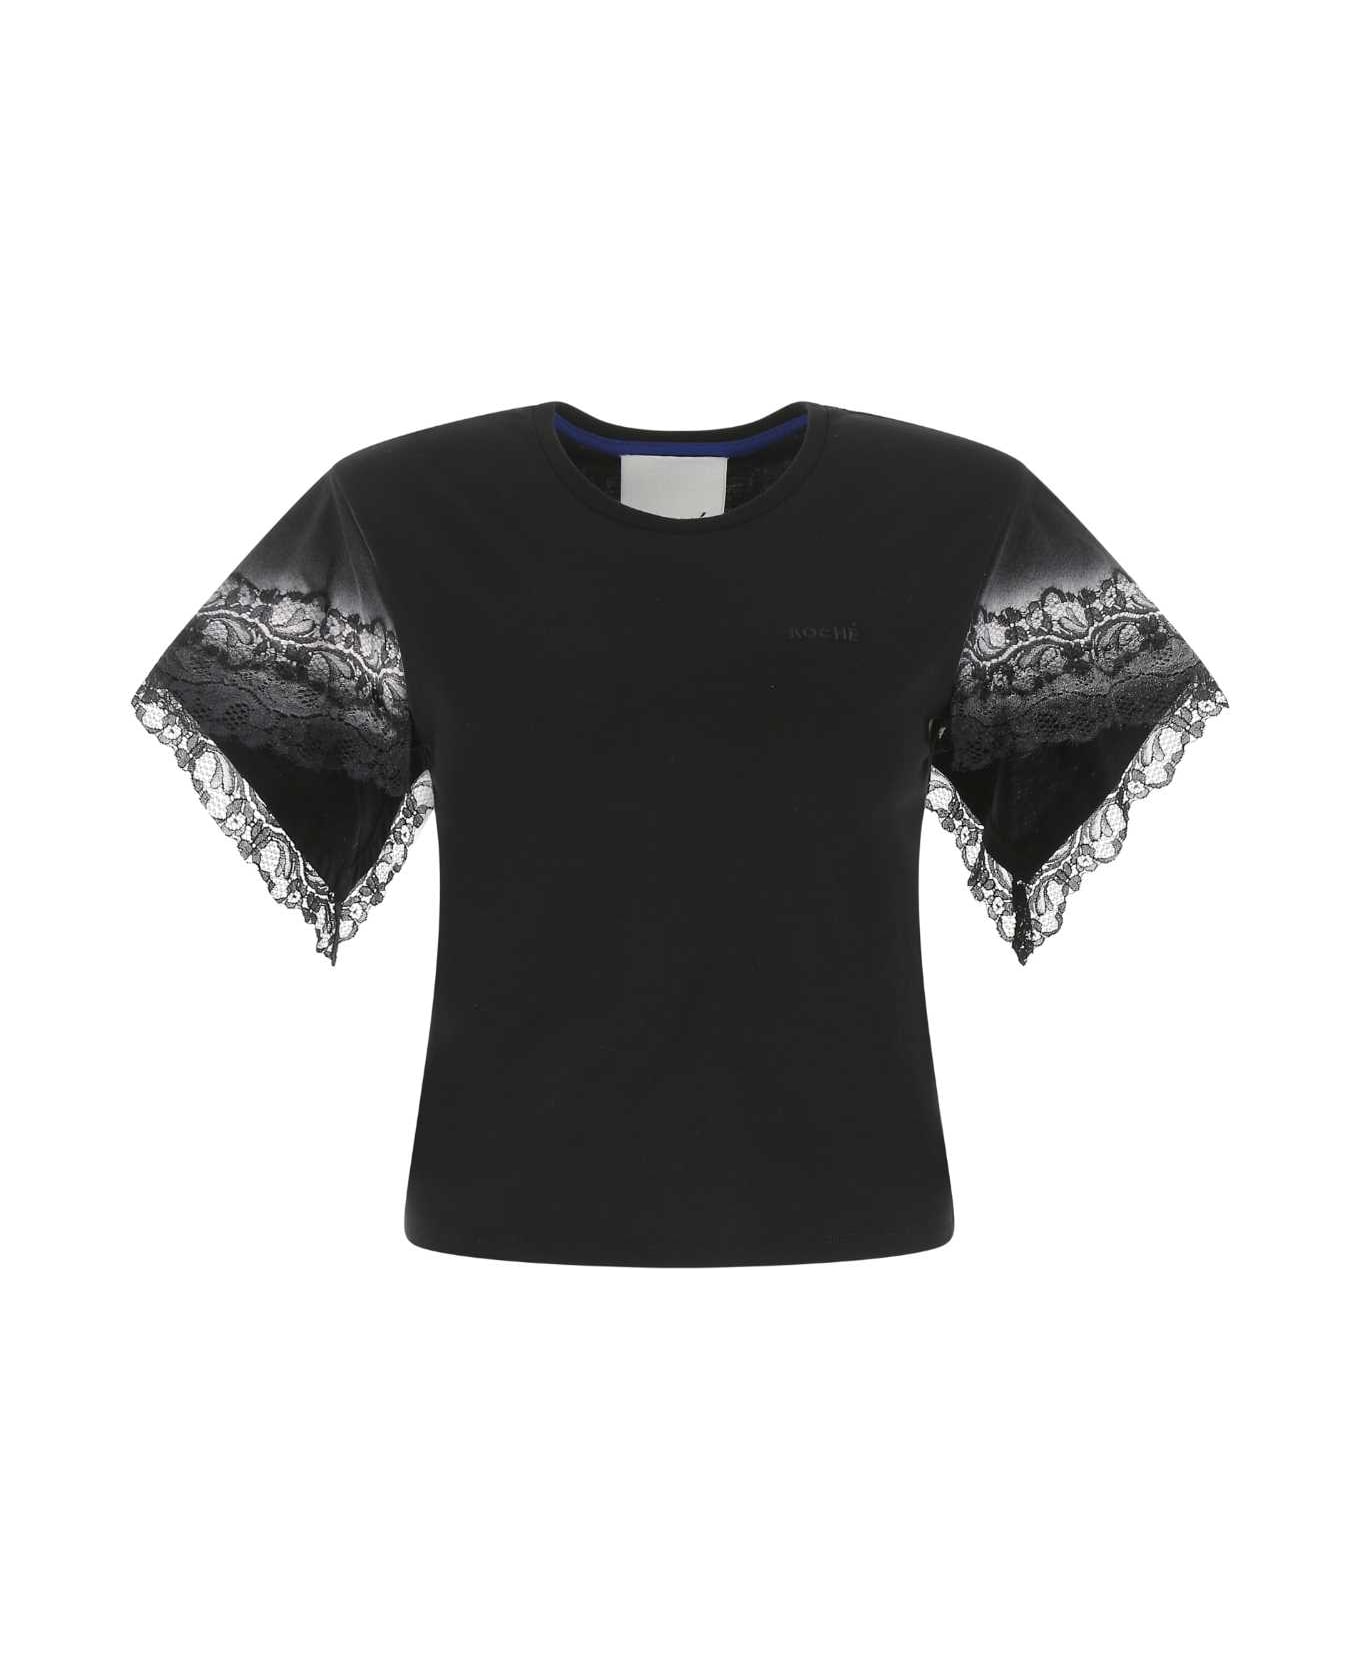 Koché Black Cotton T-shirt - 900 Tシャツ